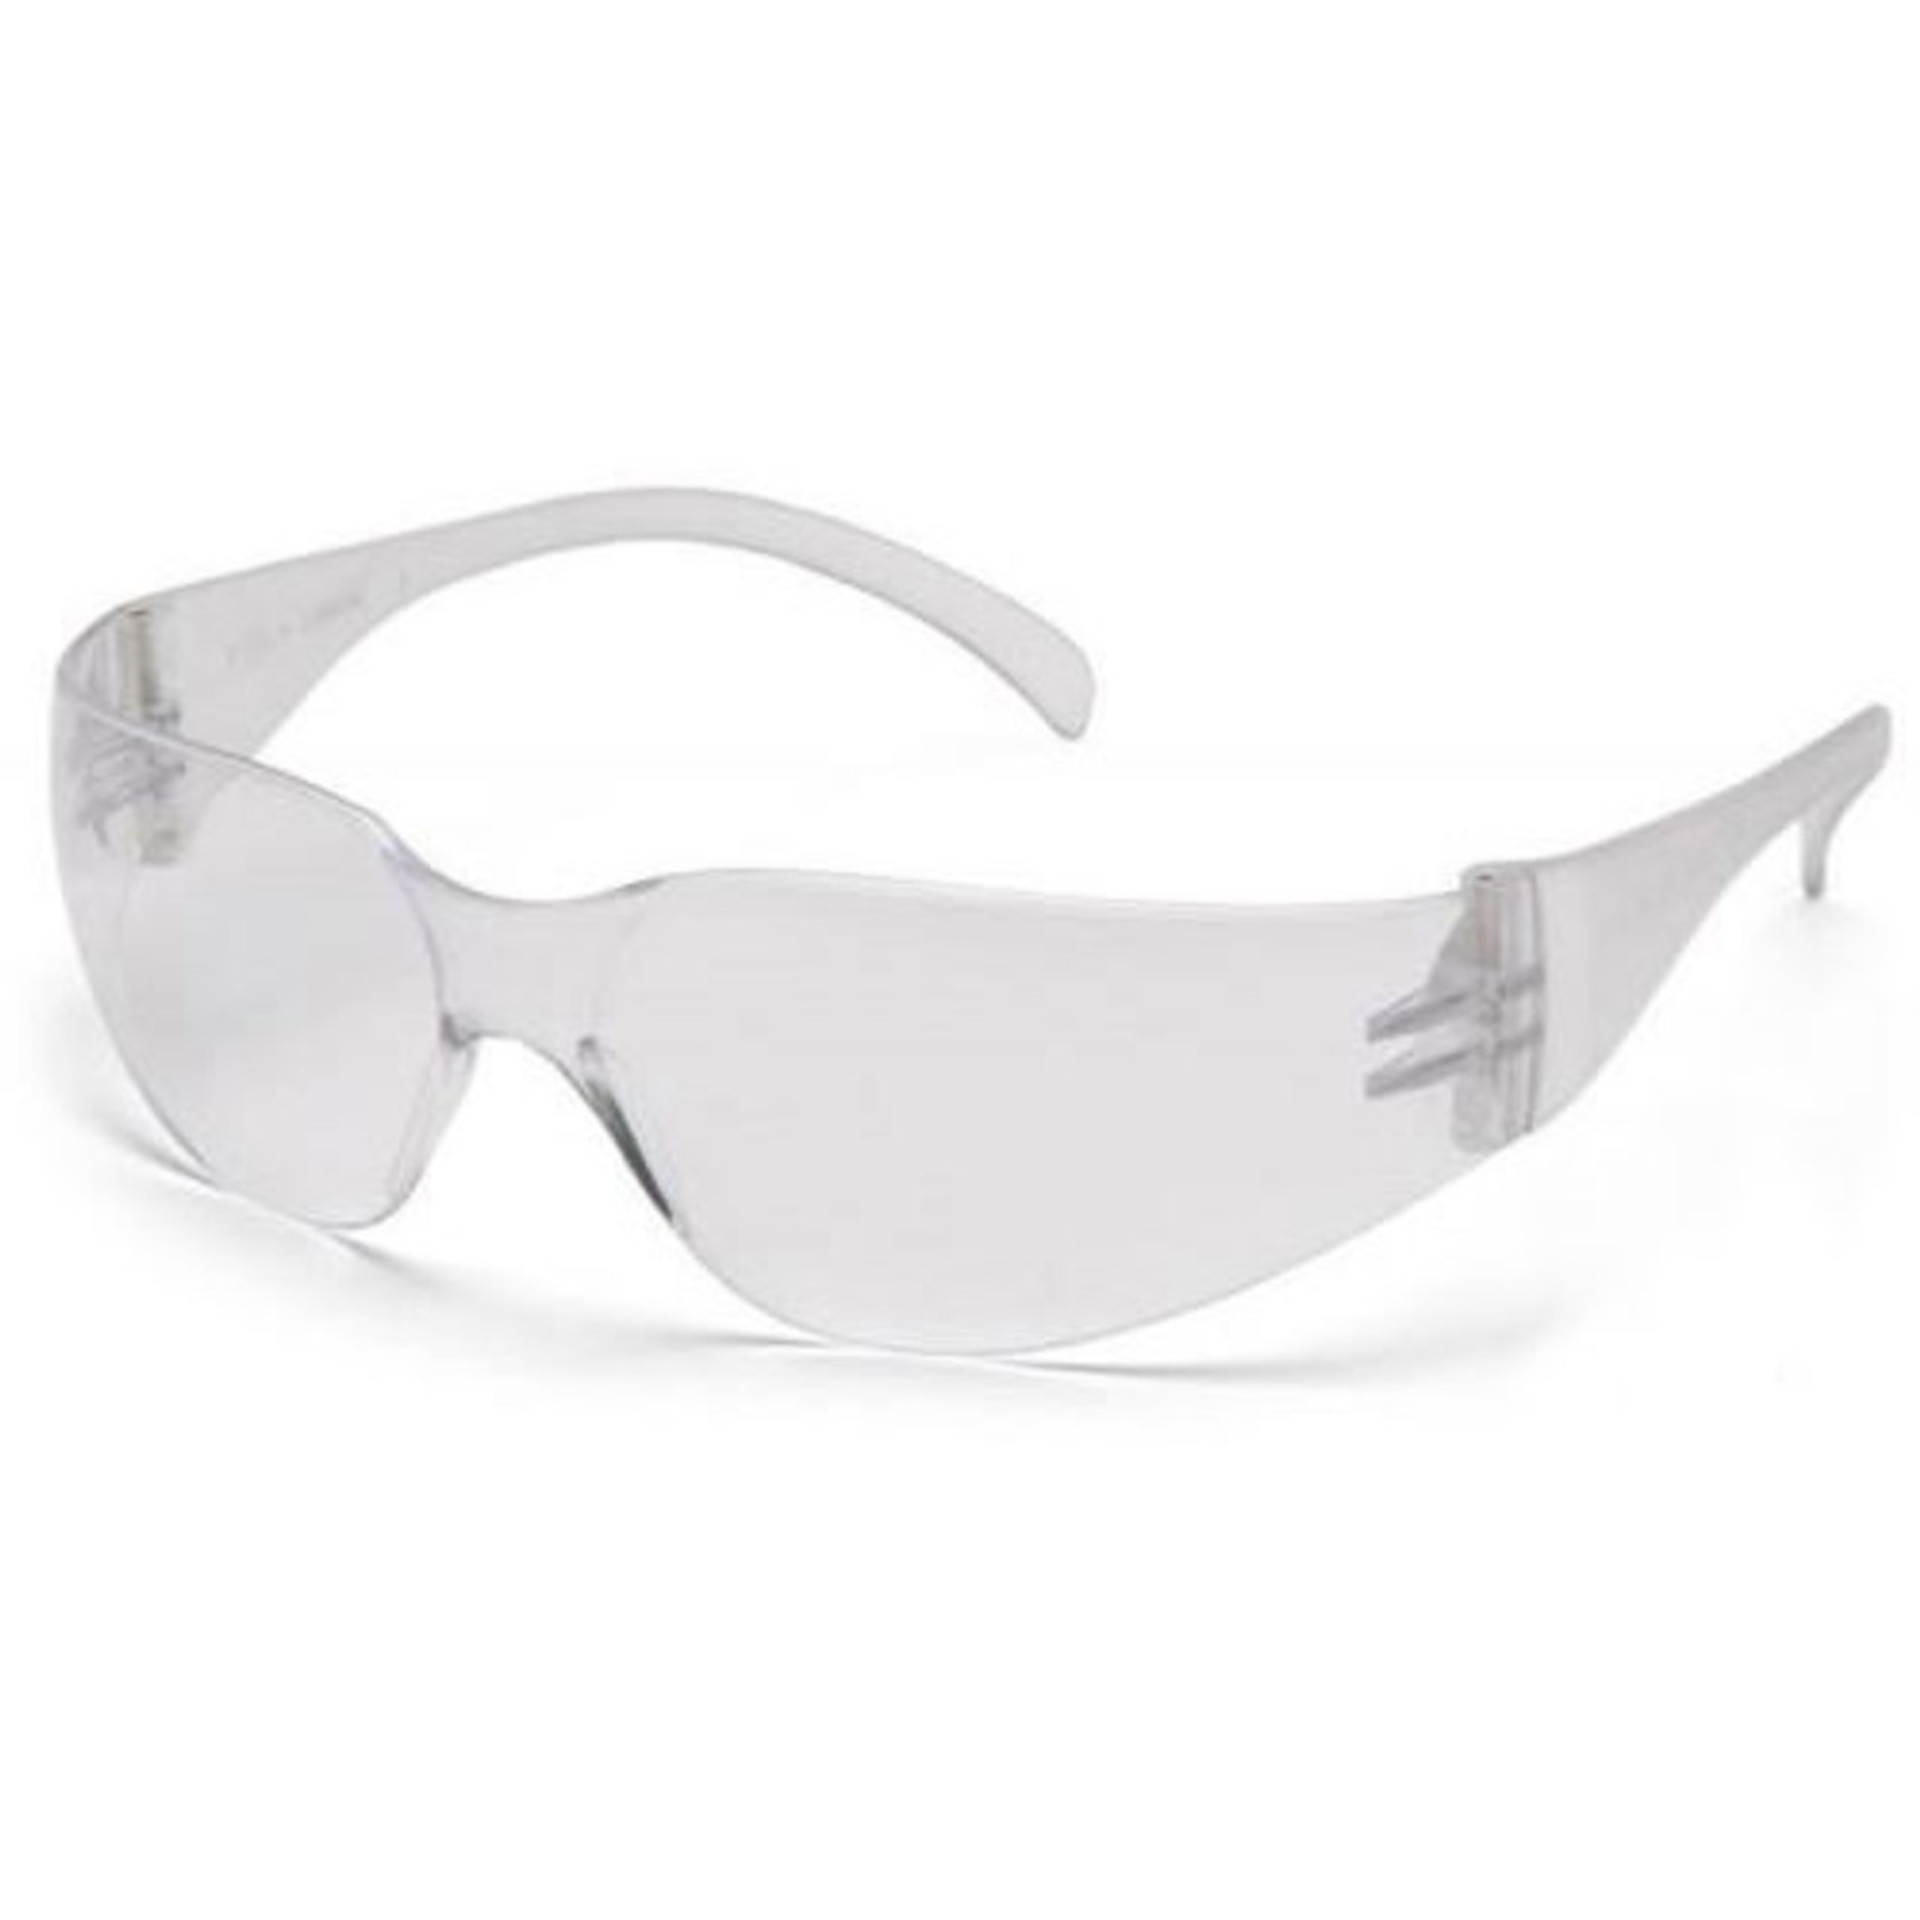 Pyramex Intruder Safety Glasses Clear Anti Fog Lens Clear Frame